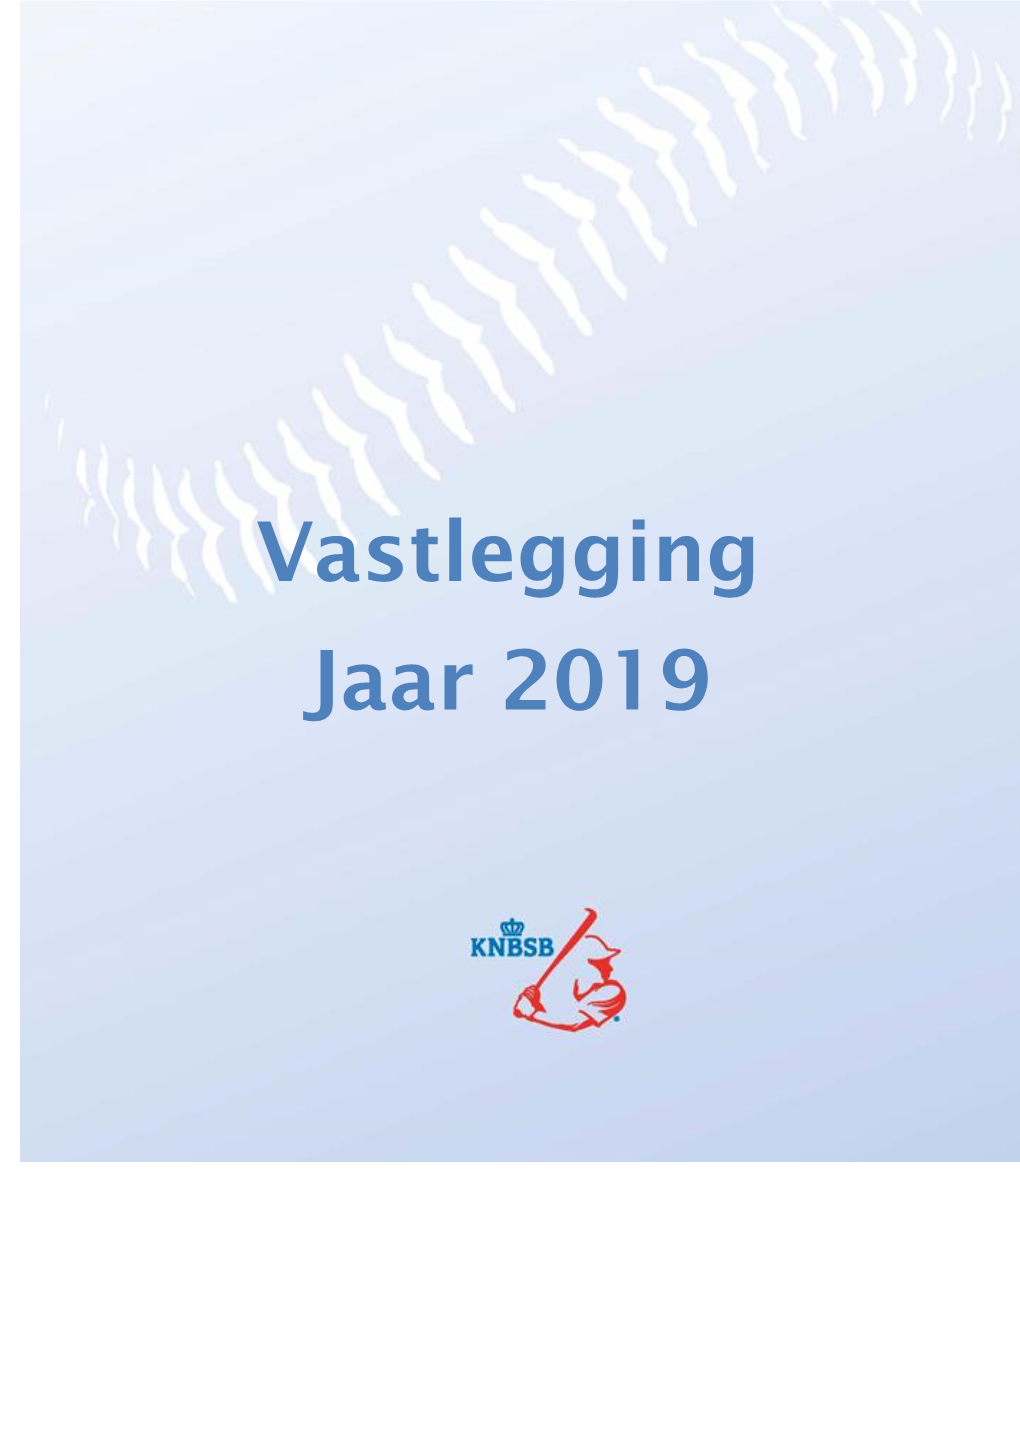 Vastlegging Jaar 2019